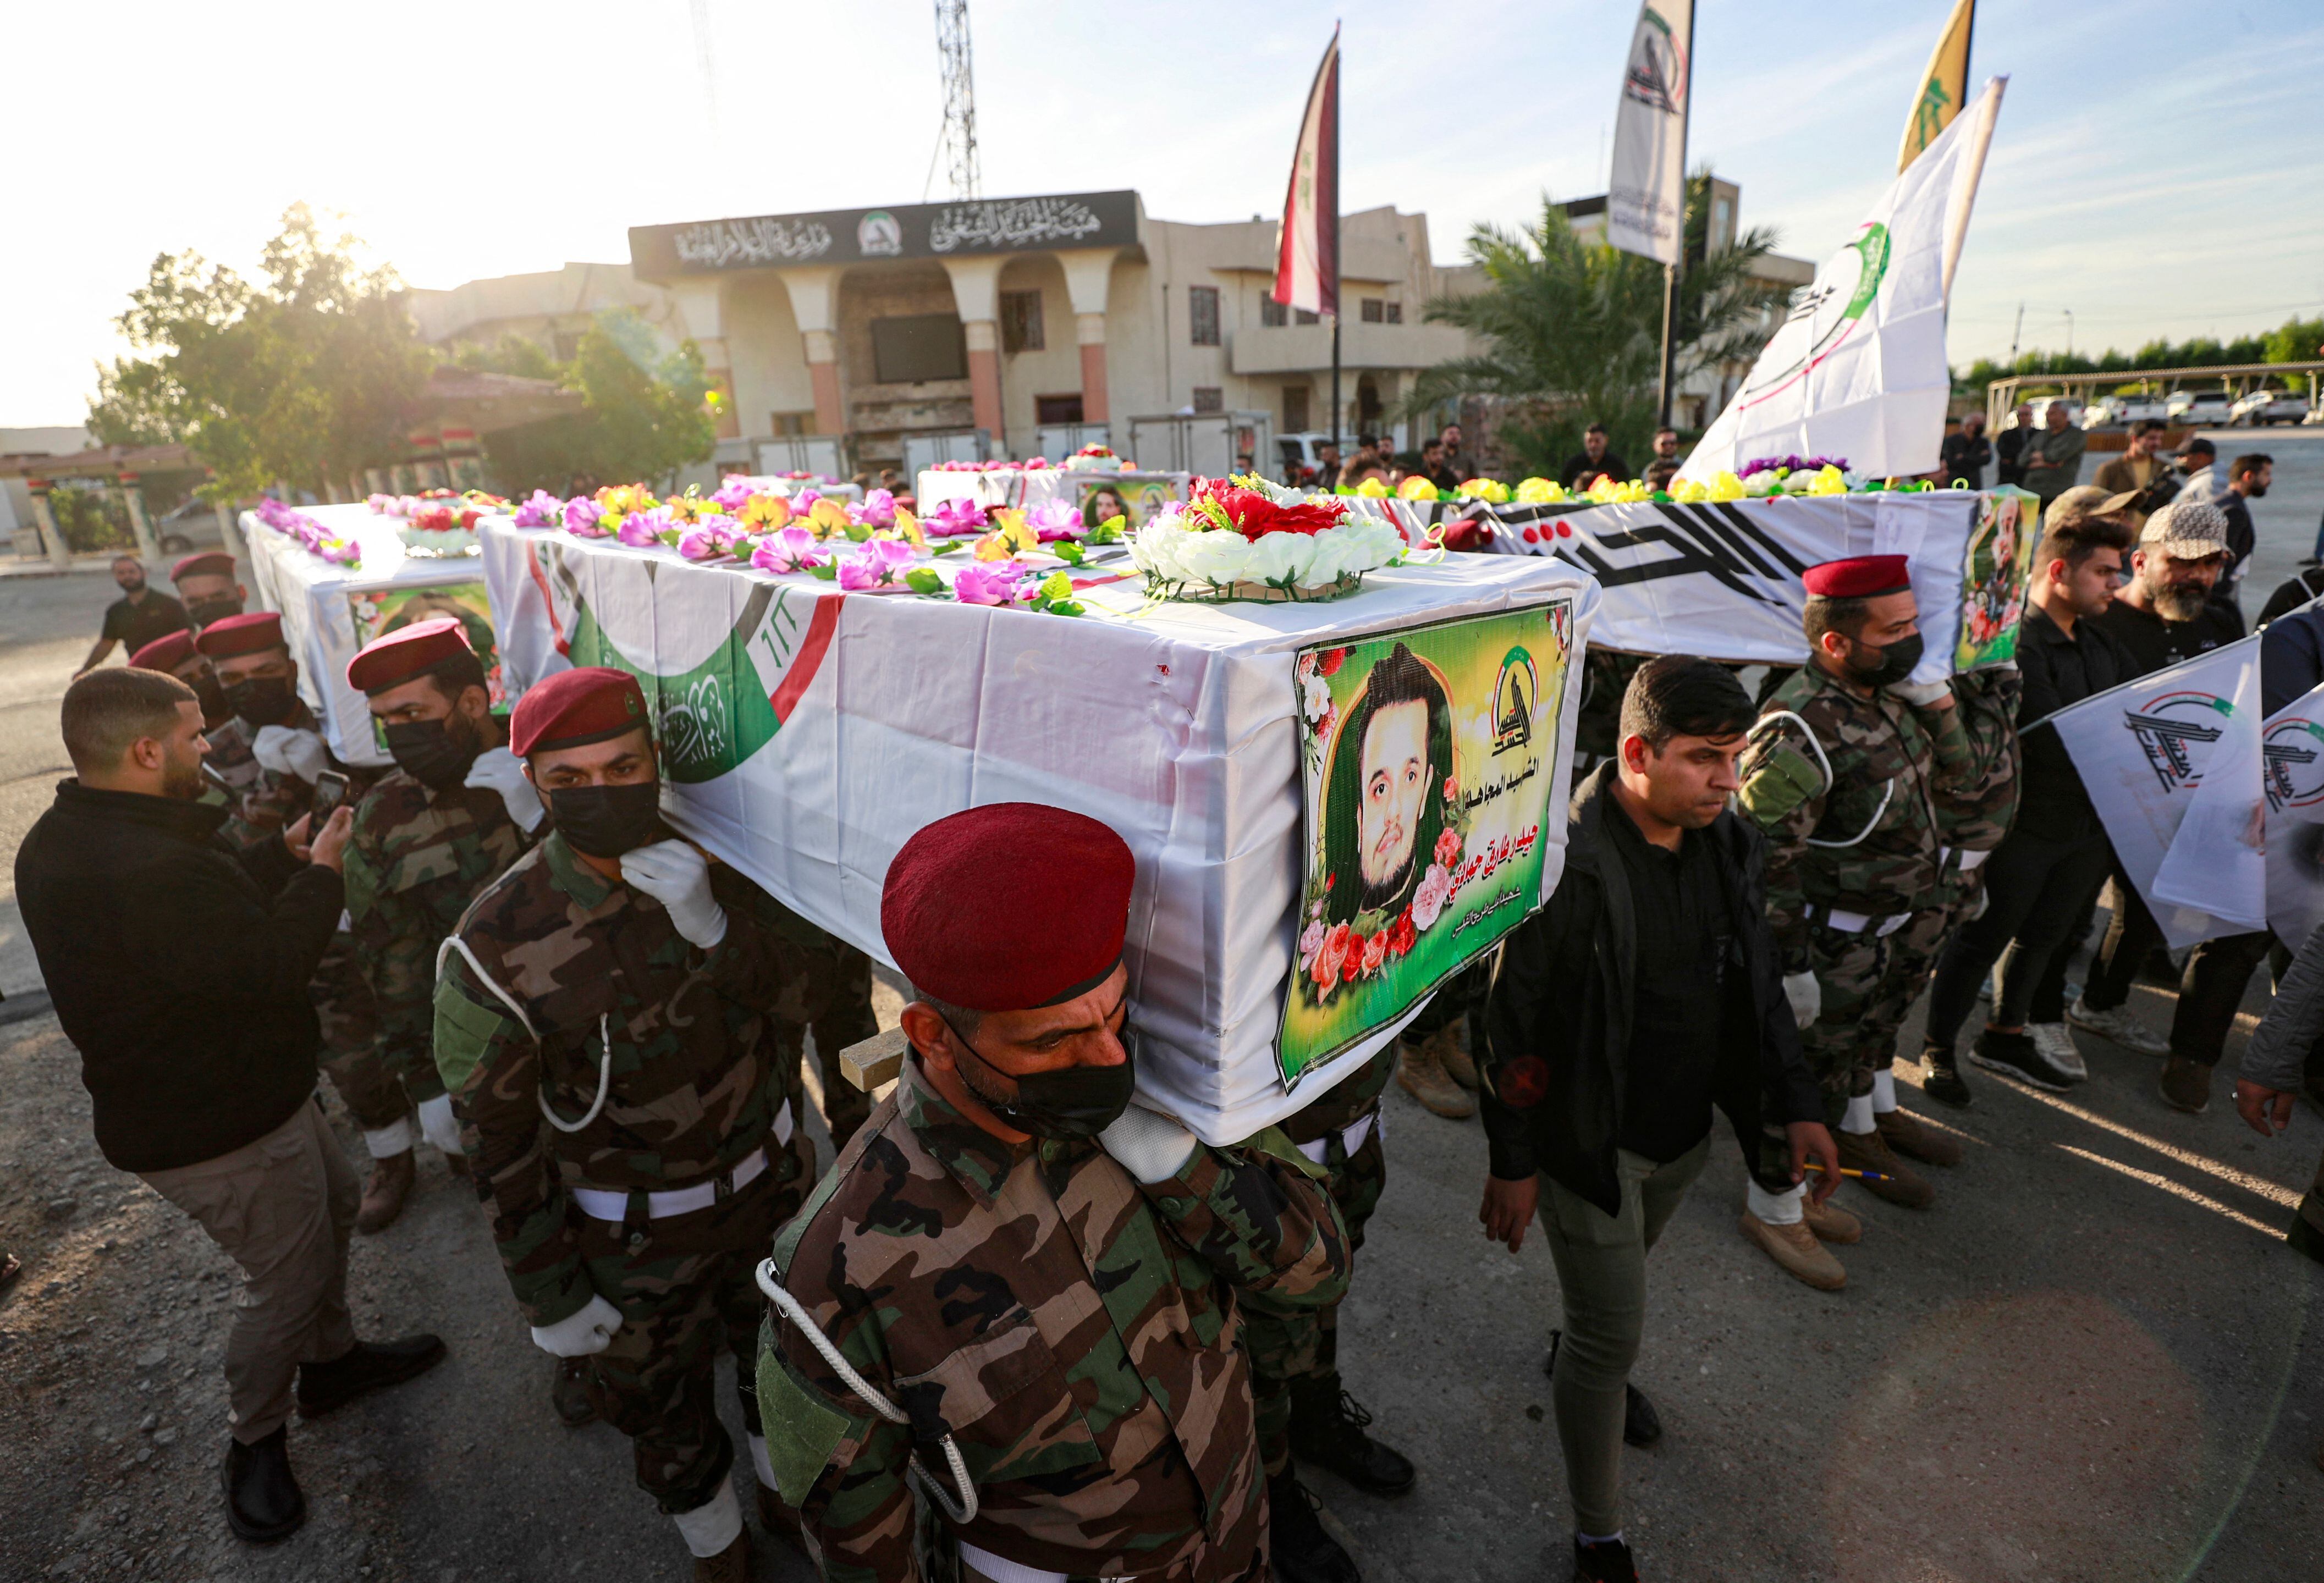 Ocho combatientes pro Irán mueren en un bombardeo estadounidense en Irak